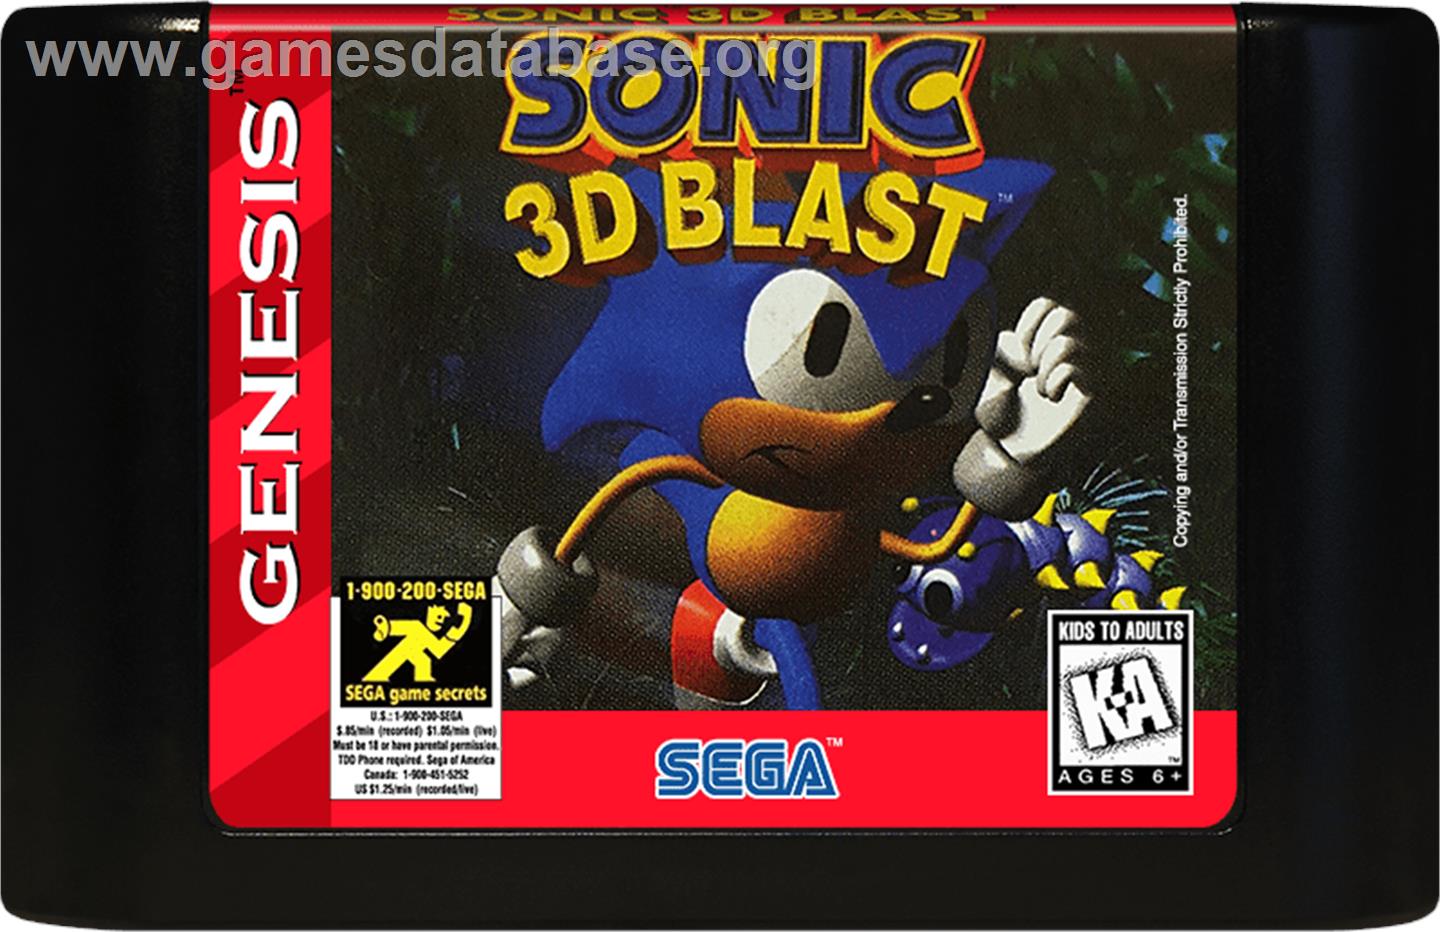 Sonic 3D Blast - Sega Genesis - Artwork - Cartridge